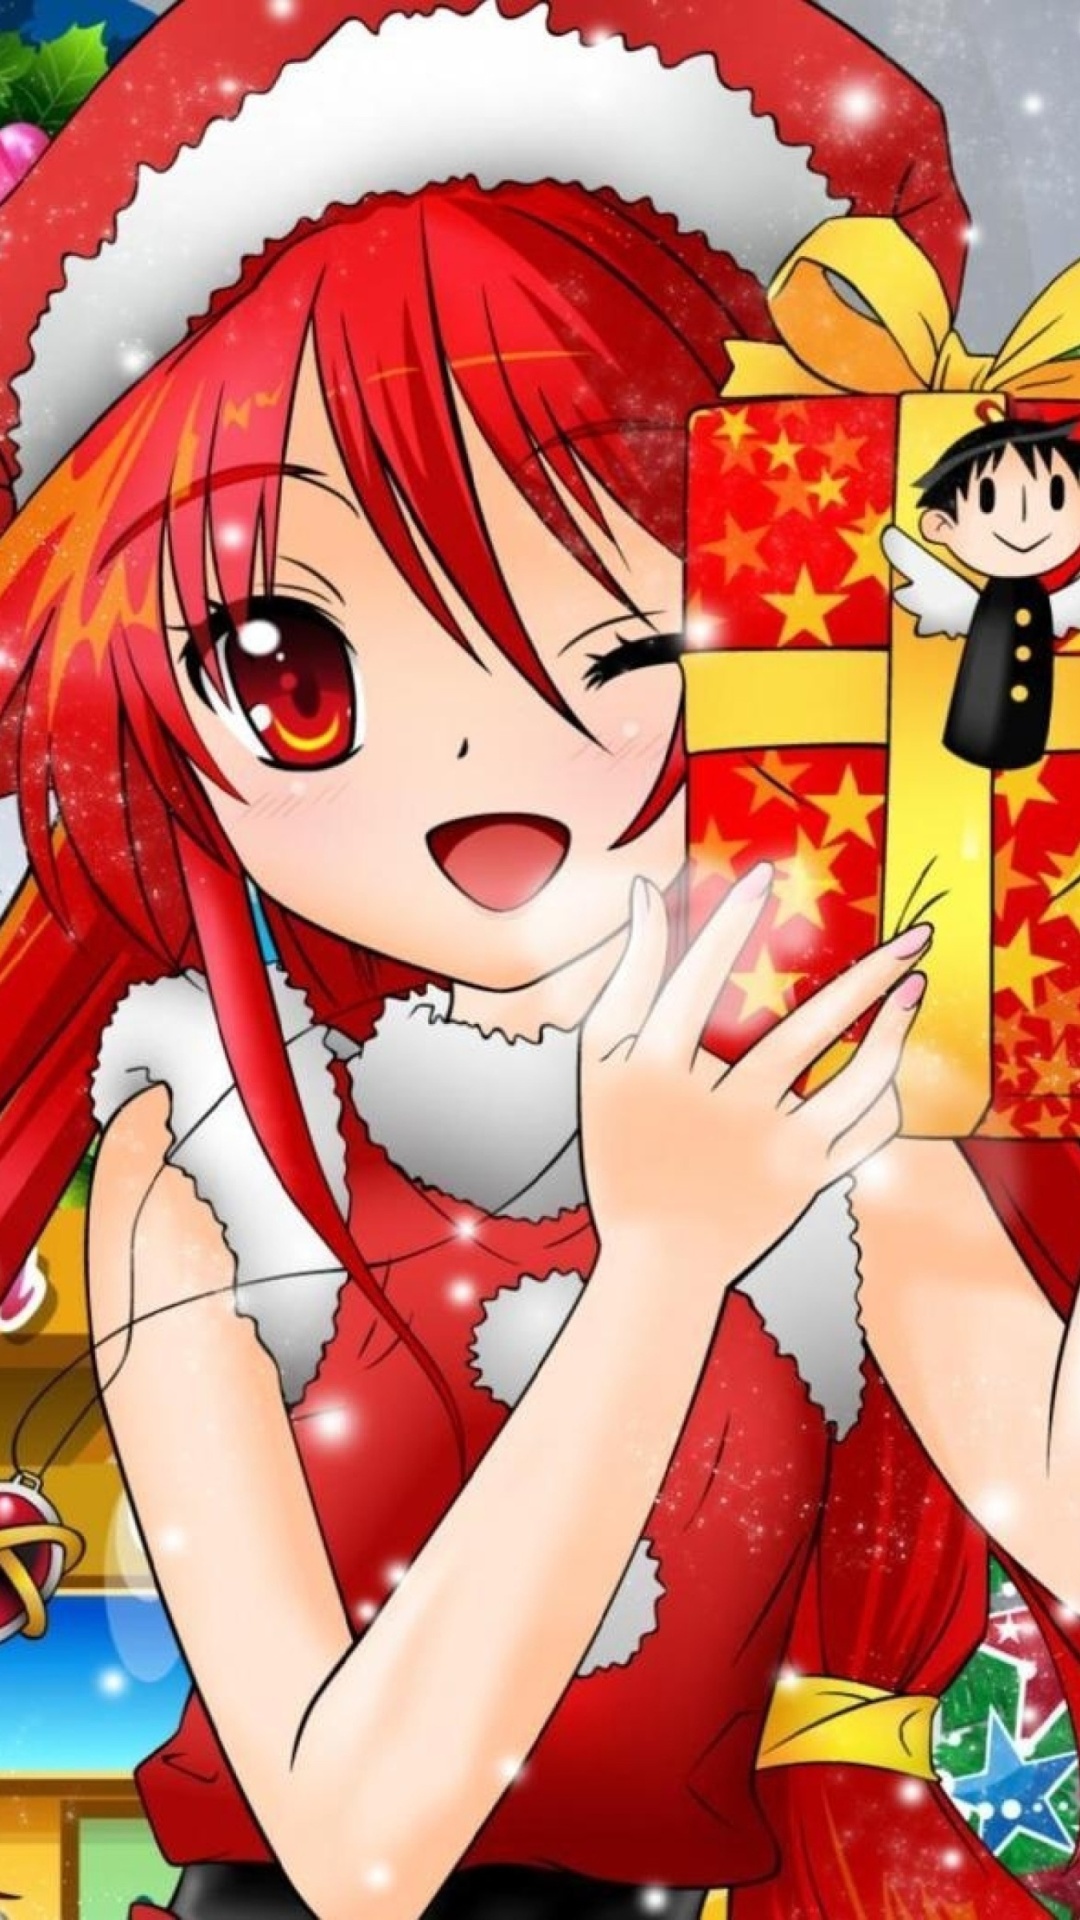 Christmas Anime girl wallpaper 1080x1920